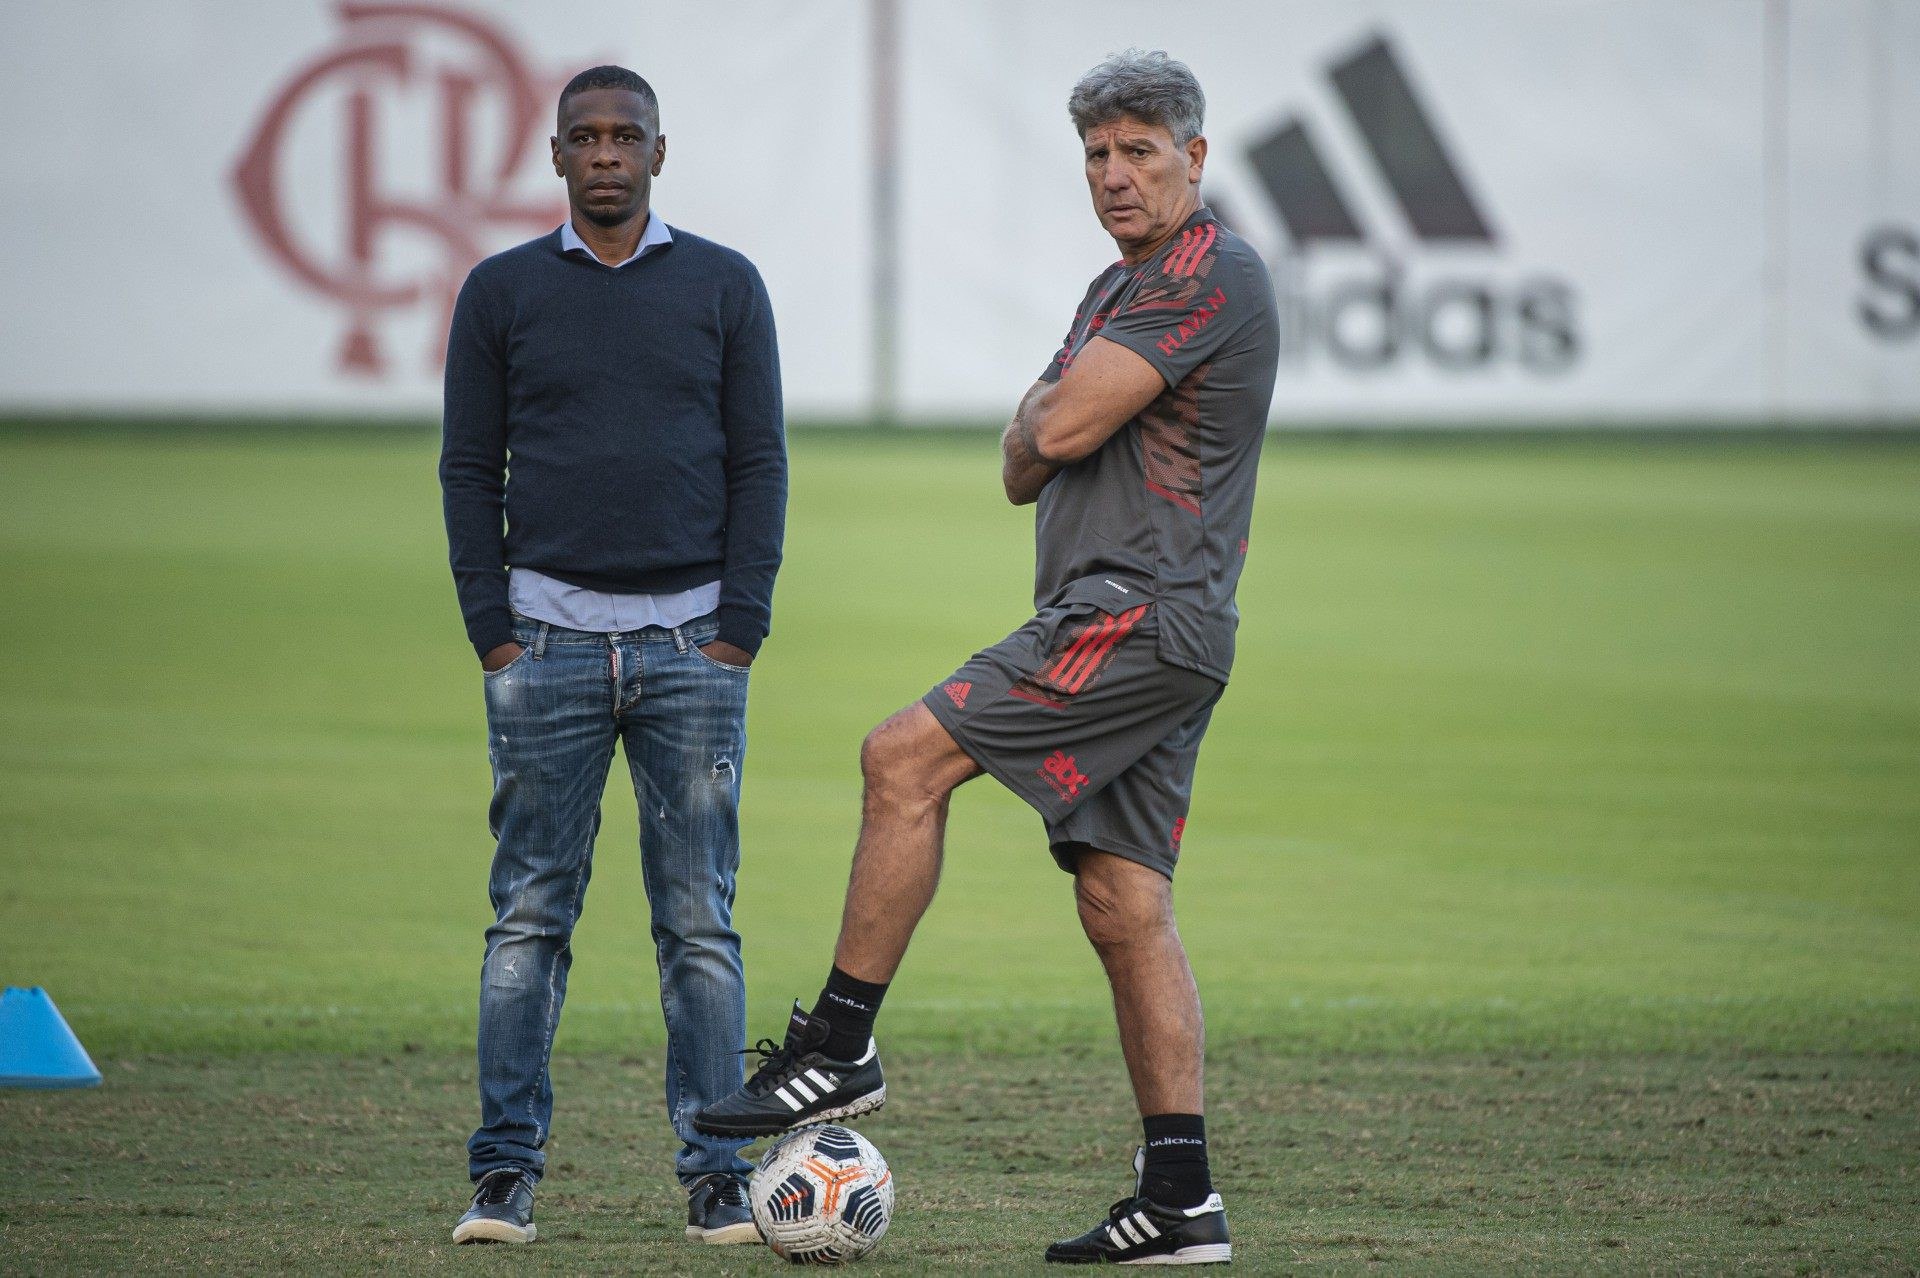 Juan ao lado de Renato no primeiro dia do treinador no clube - Alexandre Vidal / Flamengo